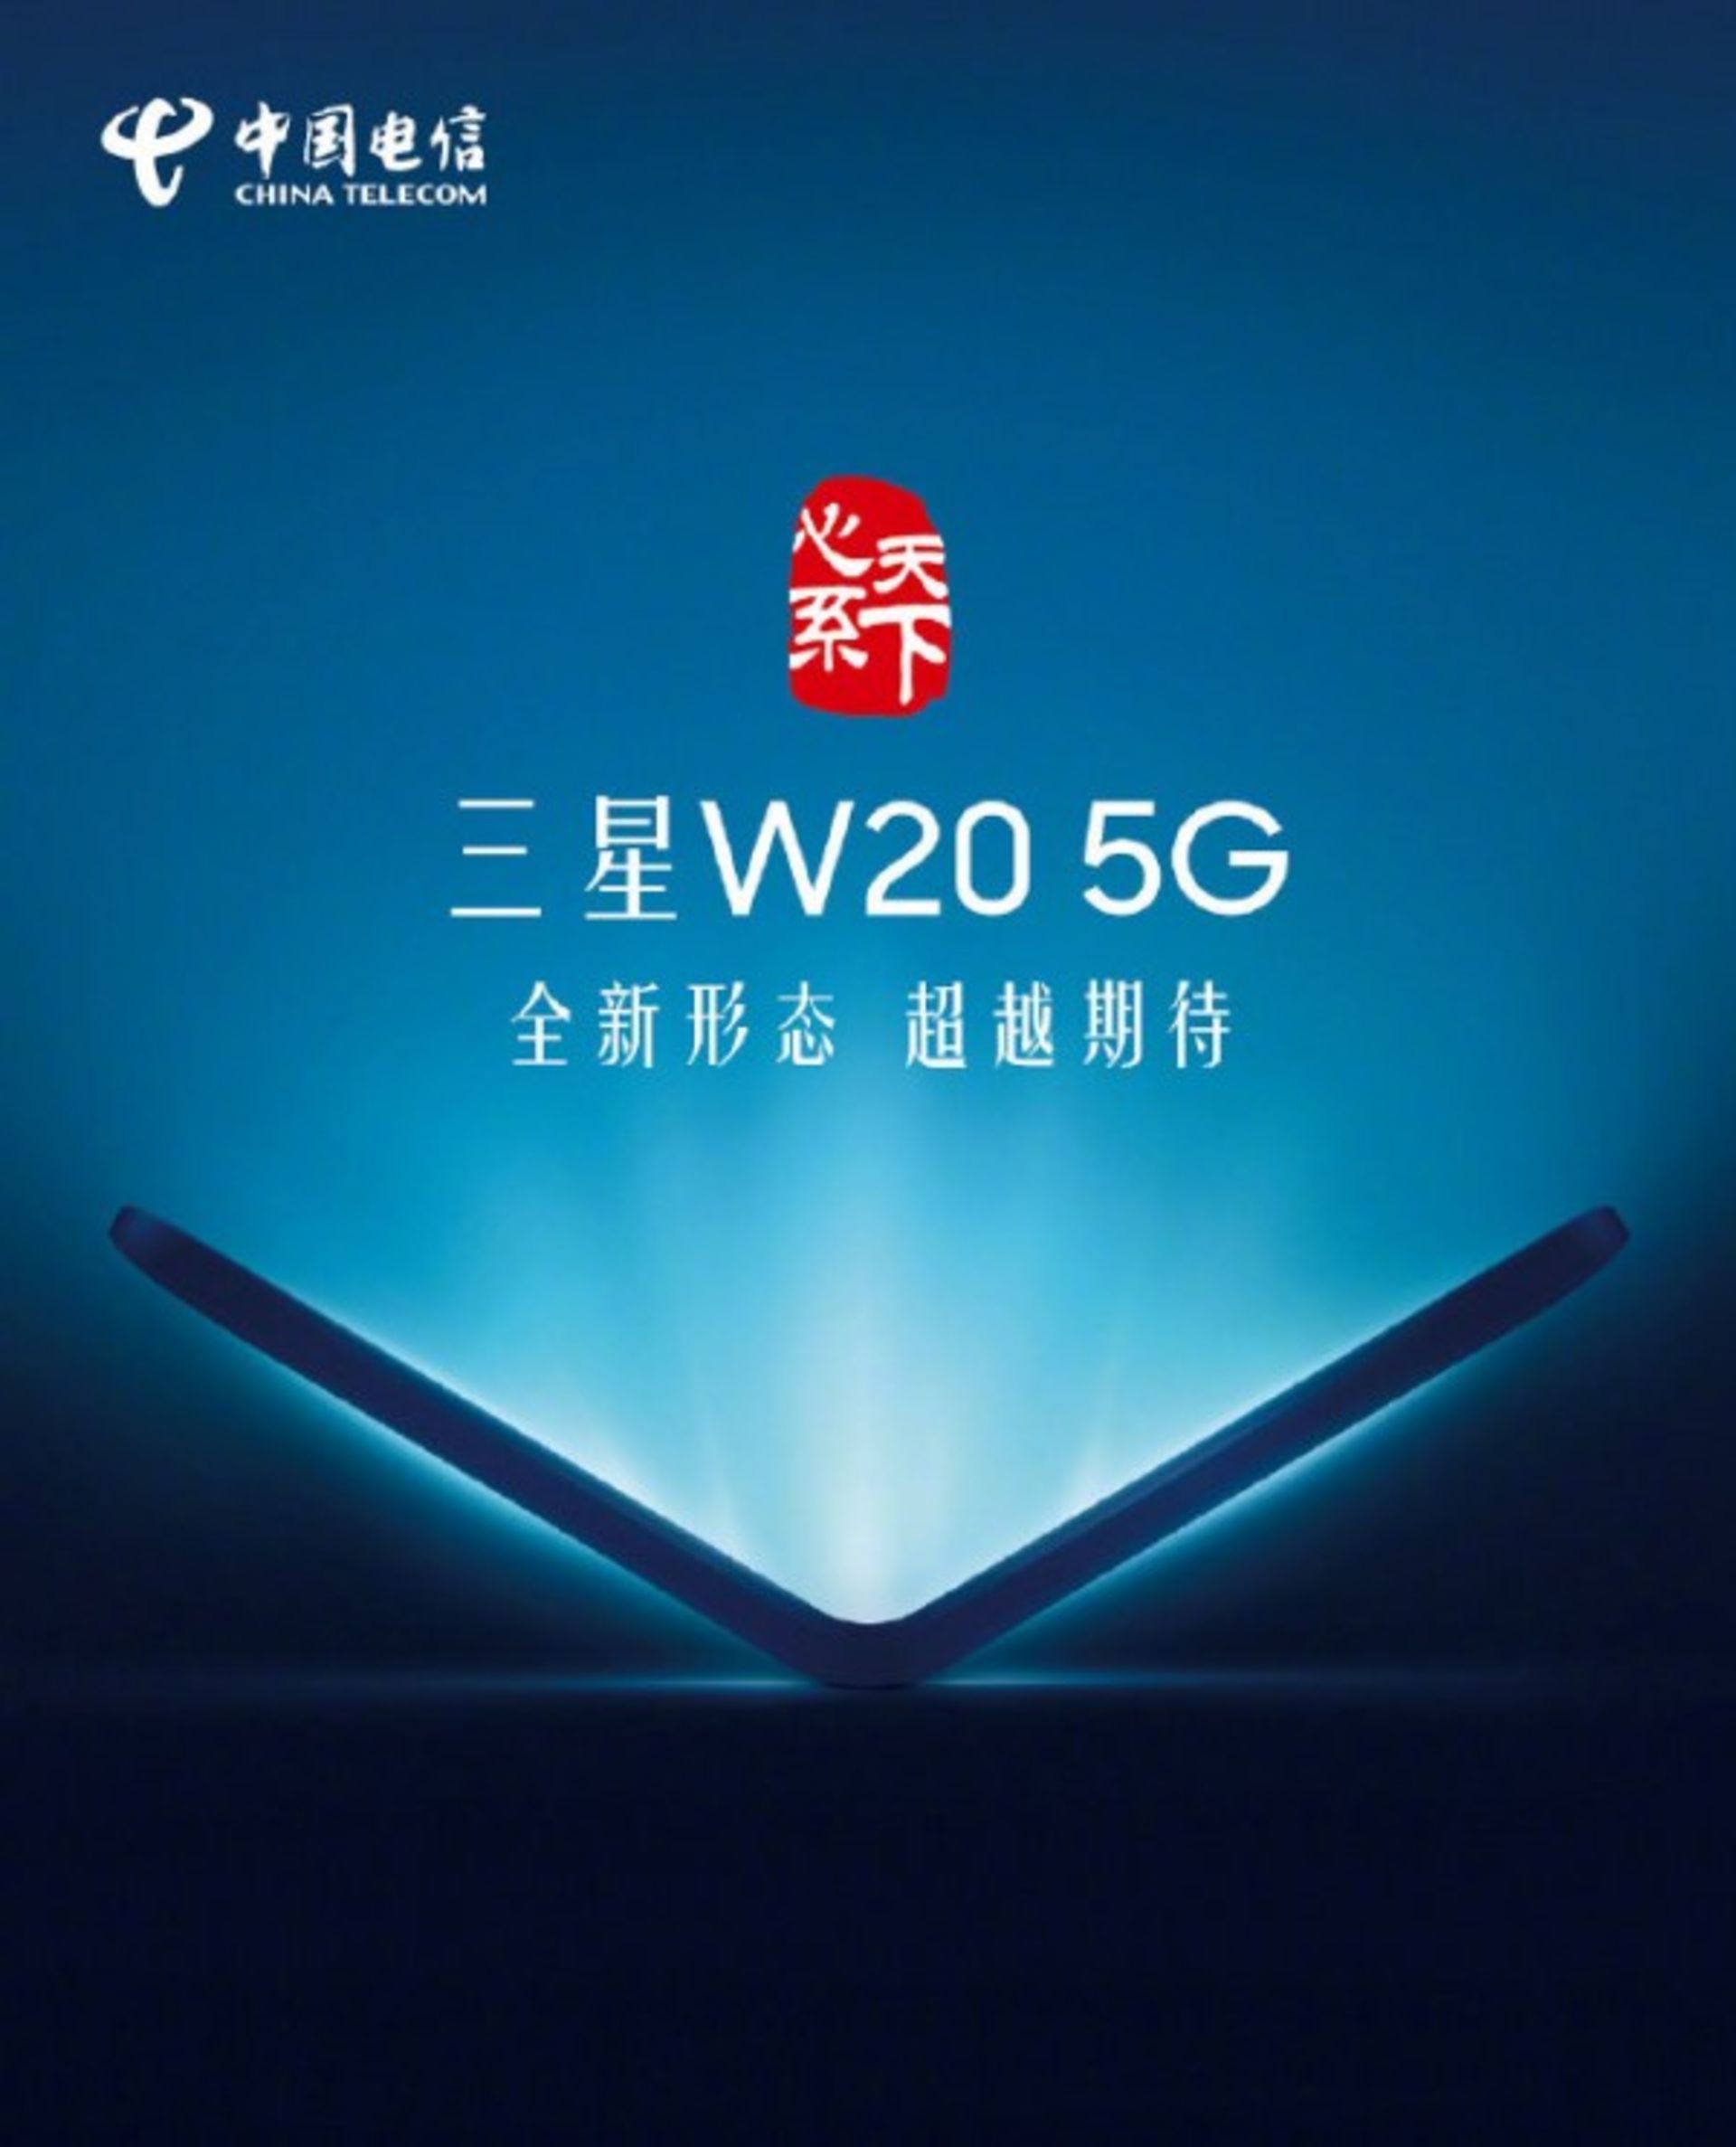 W20 5G